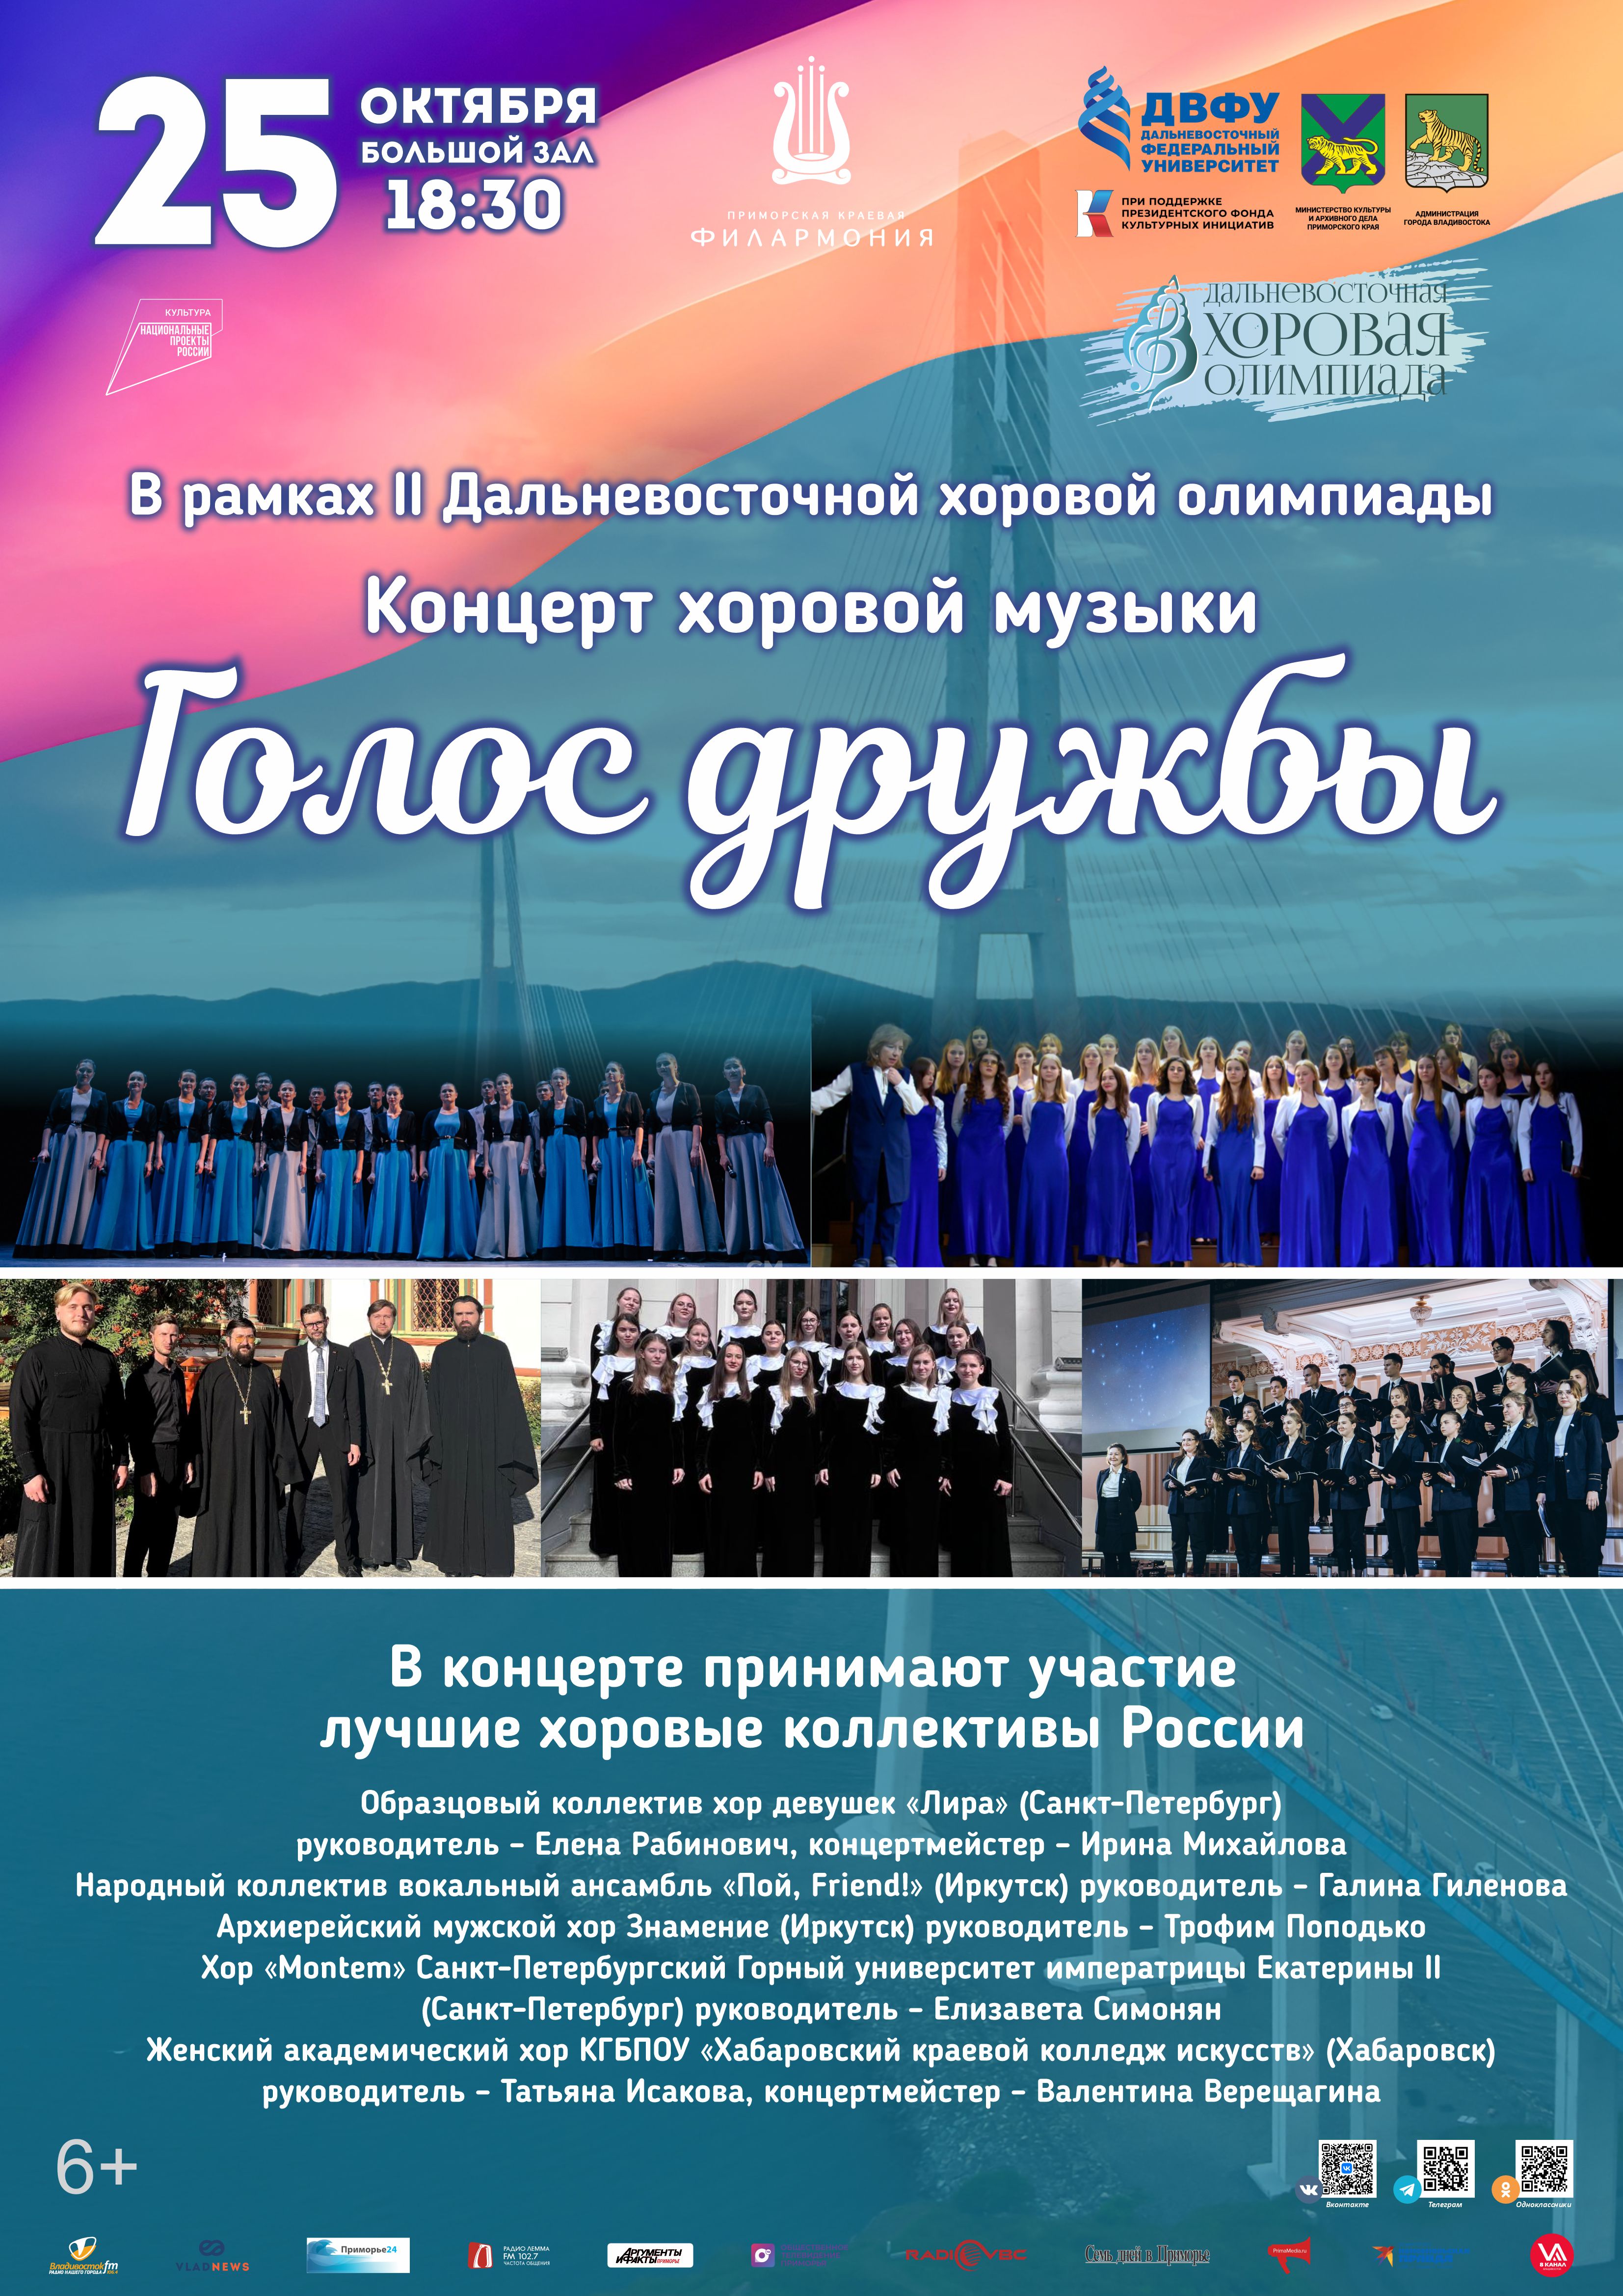 25 октября Концерт хоровой музыки "Голос дружбы"